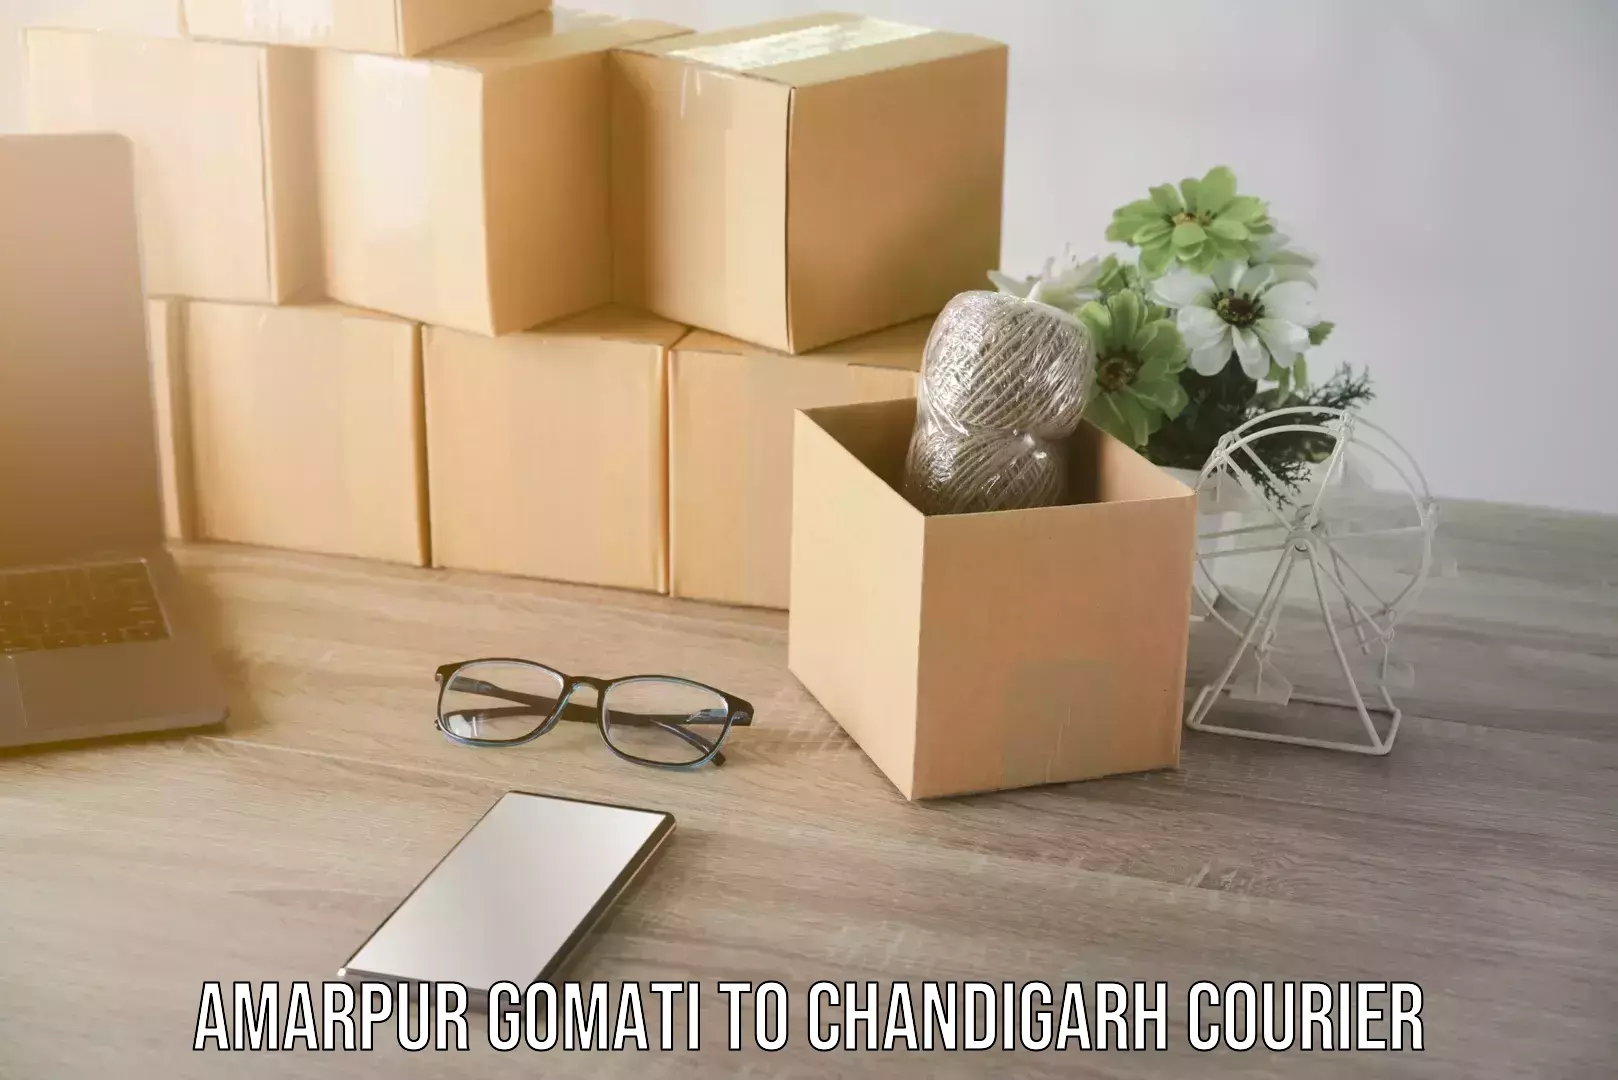 Business shipping needs Amarpur Gomati to Chandigarh